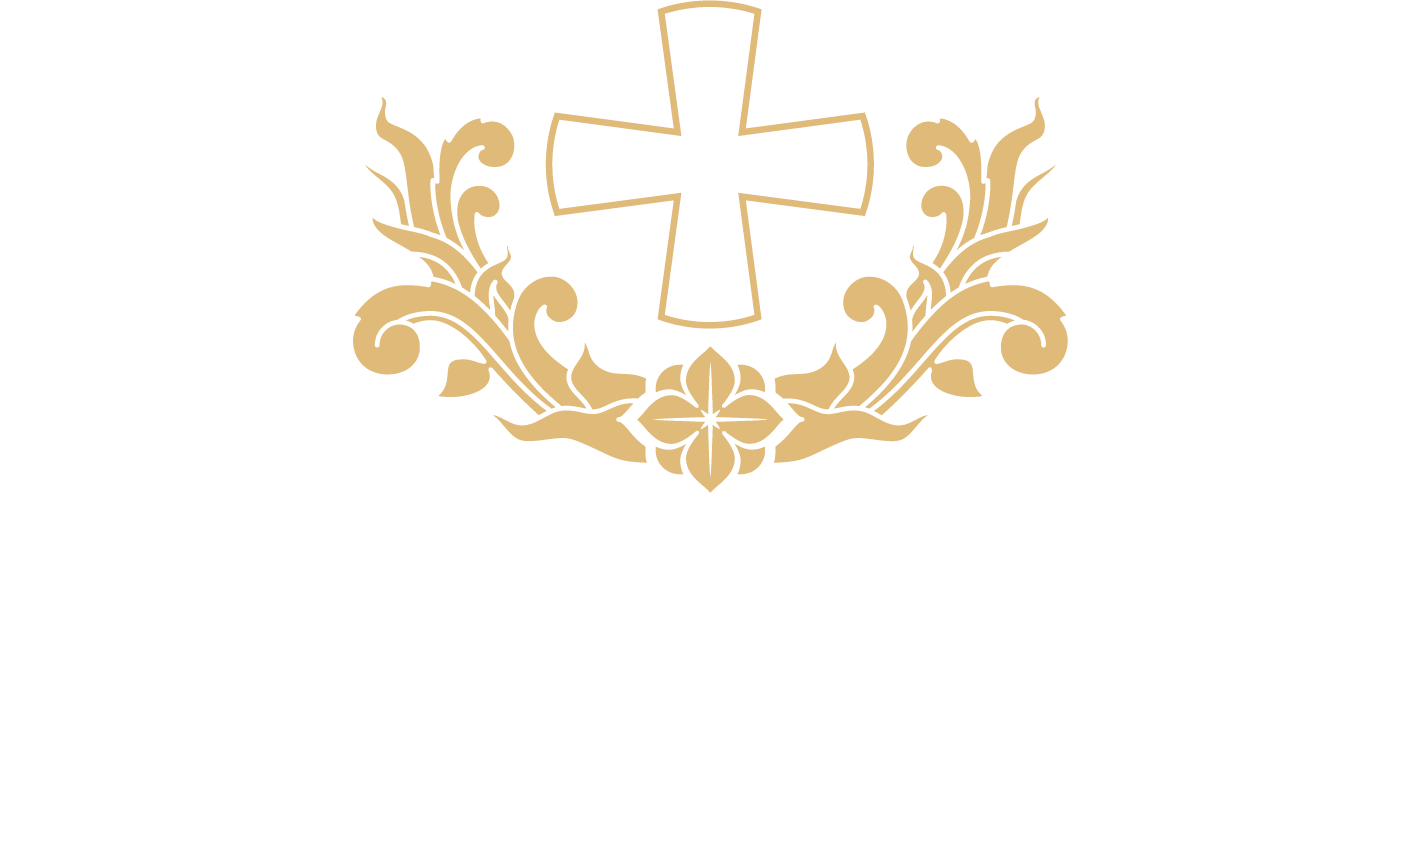 Auberge de la Croix-Blanche